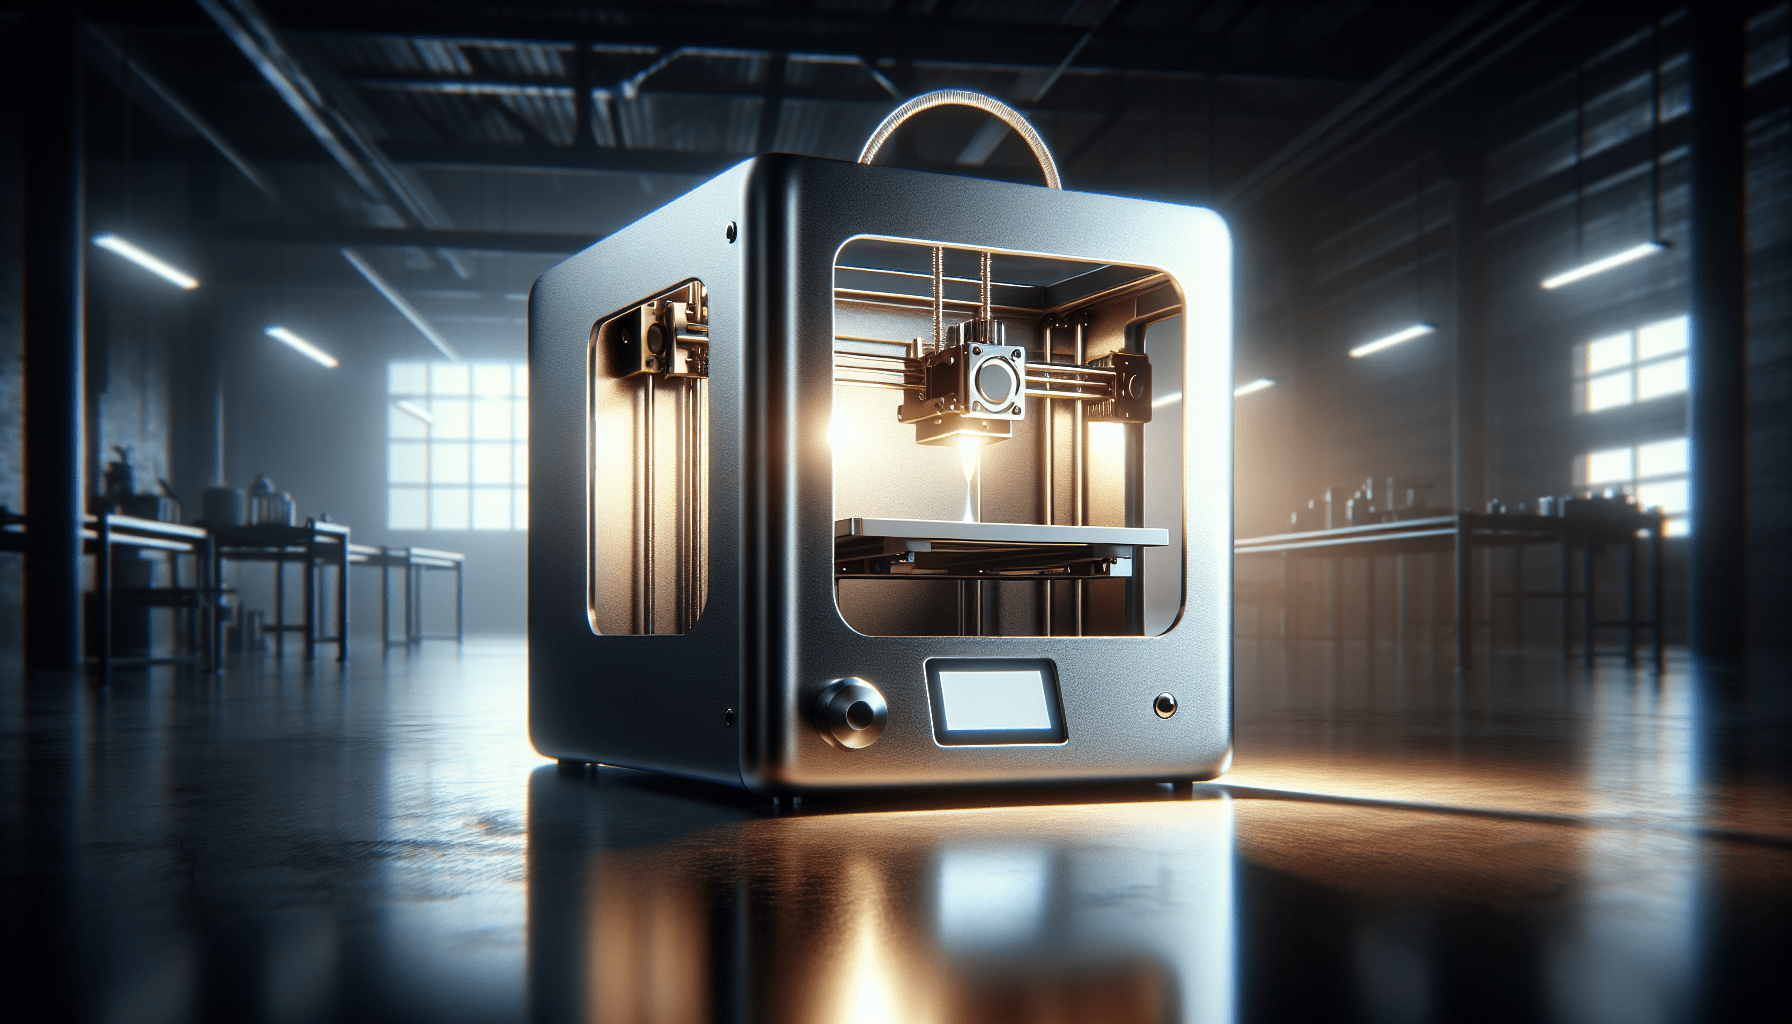 australian-metal-3d-printer-manufacturer-spee3d-to-launch-titanspee3d Australian Metal 3D Printer Manufacturer SPEE3D to Launch TitanSPEE3D